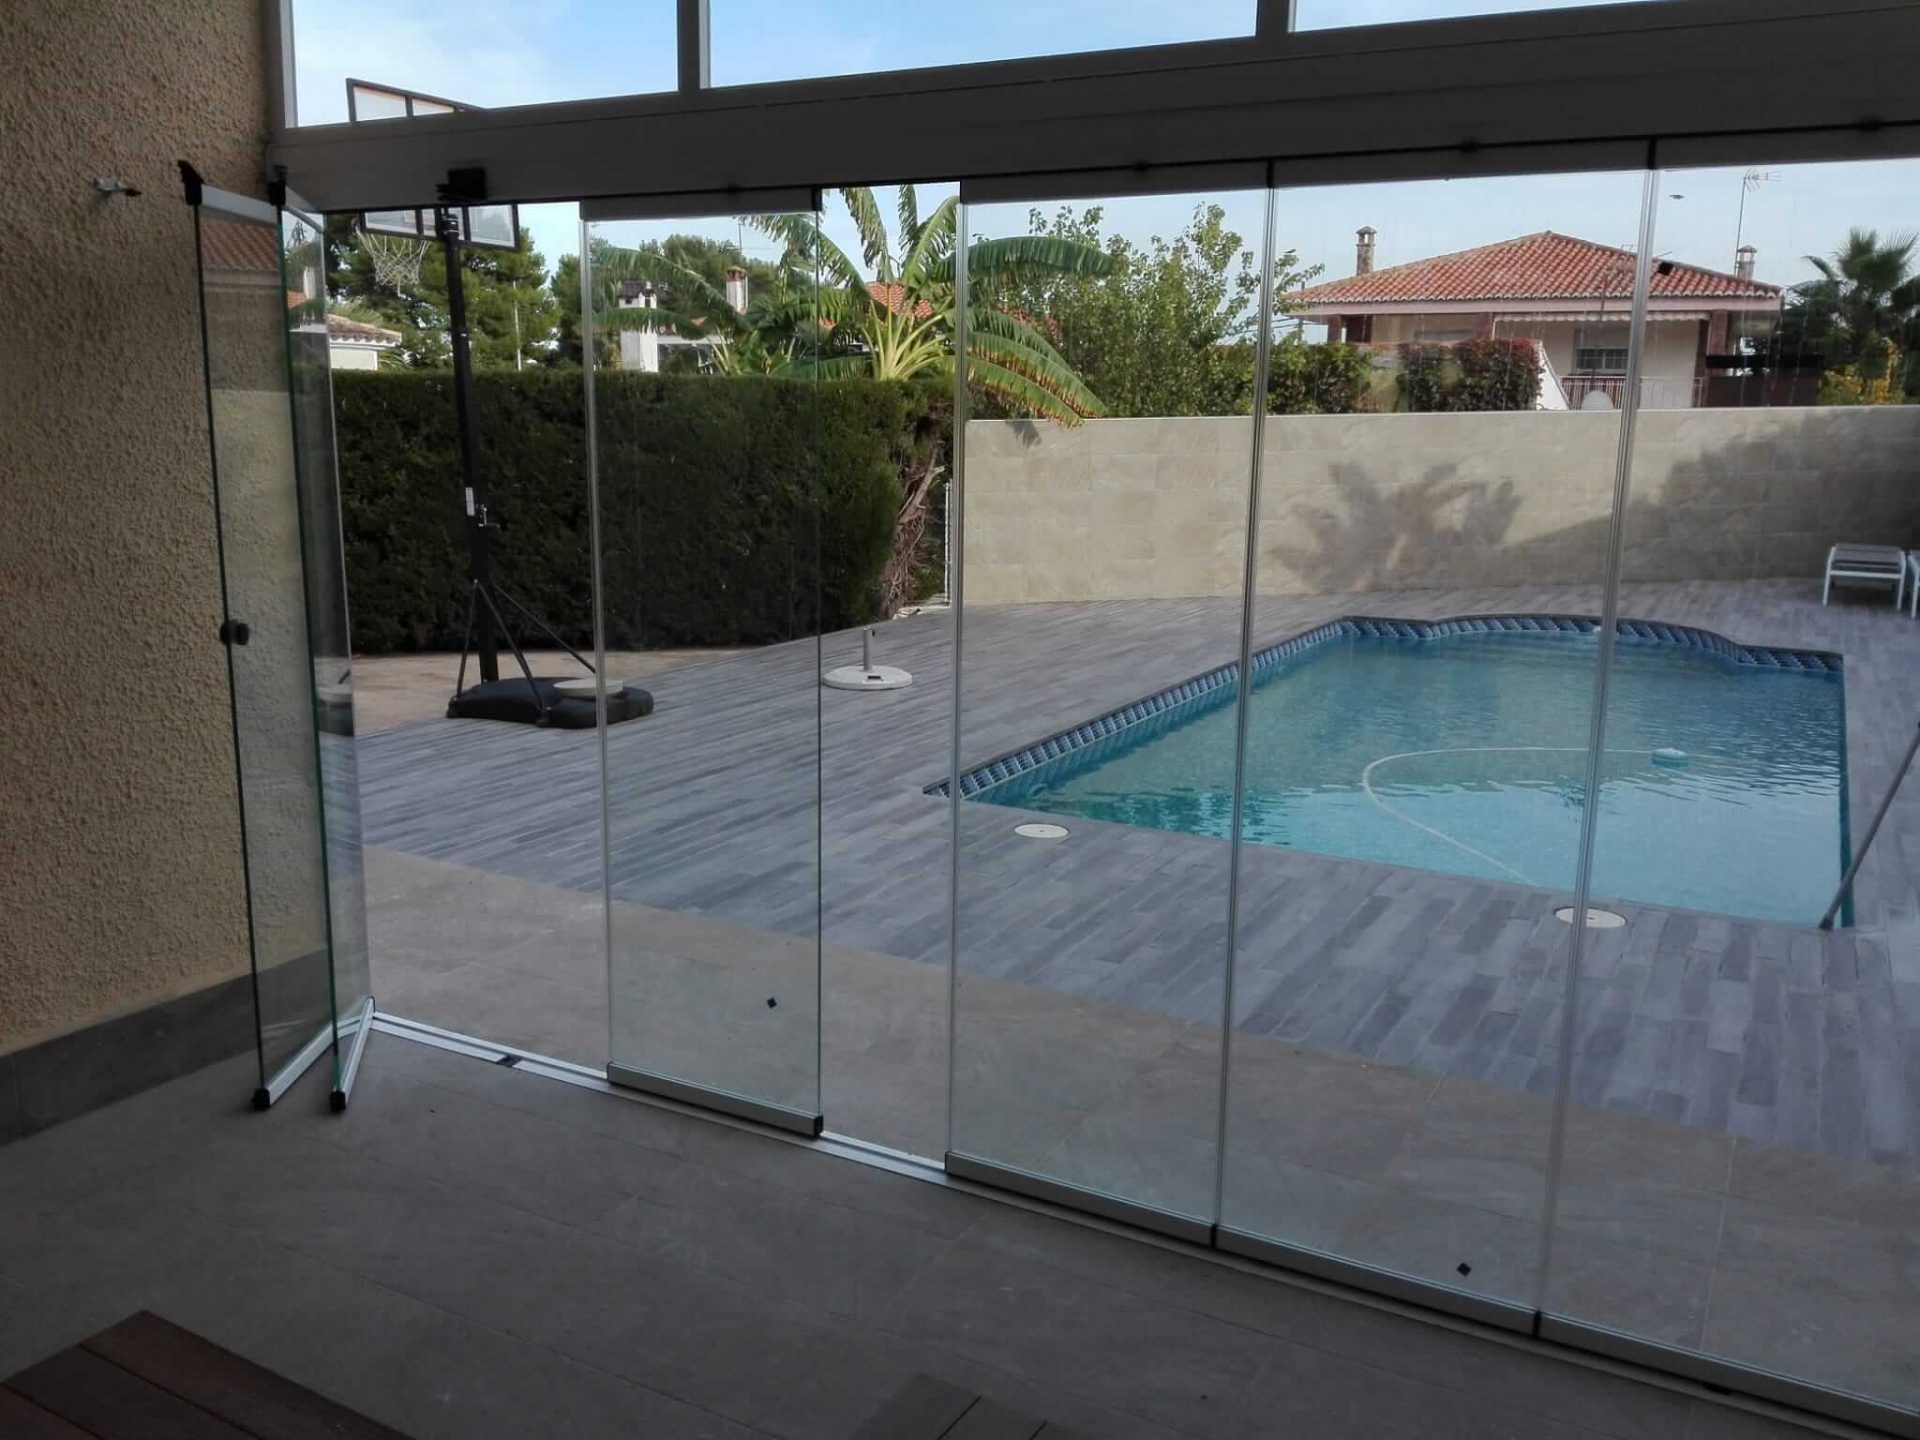 Balconera de cristal transparente de 6 hojas abierta, con piscina de fondo